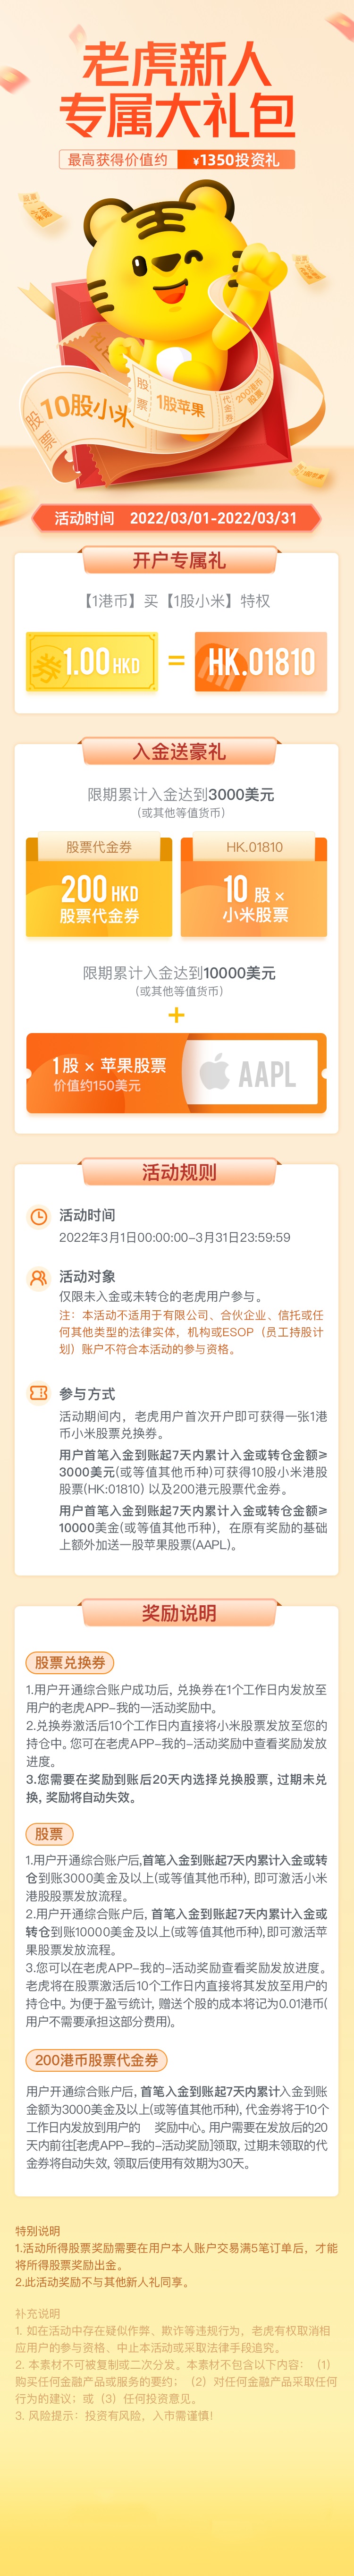 老虎证券2022年3月中国开户优惠：送11股小米+1股苹果+200港币+100元-图片2